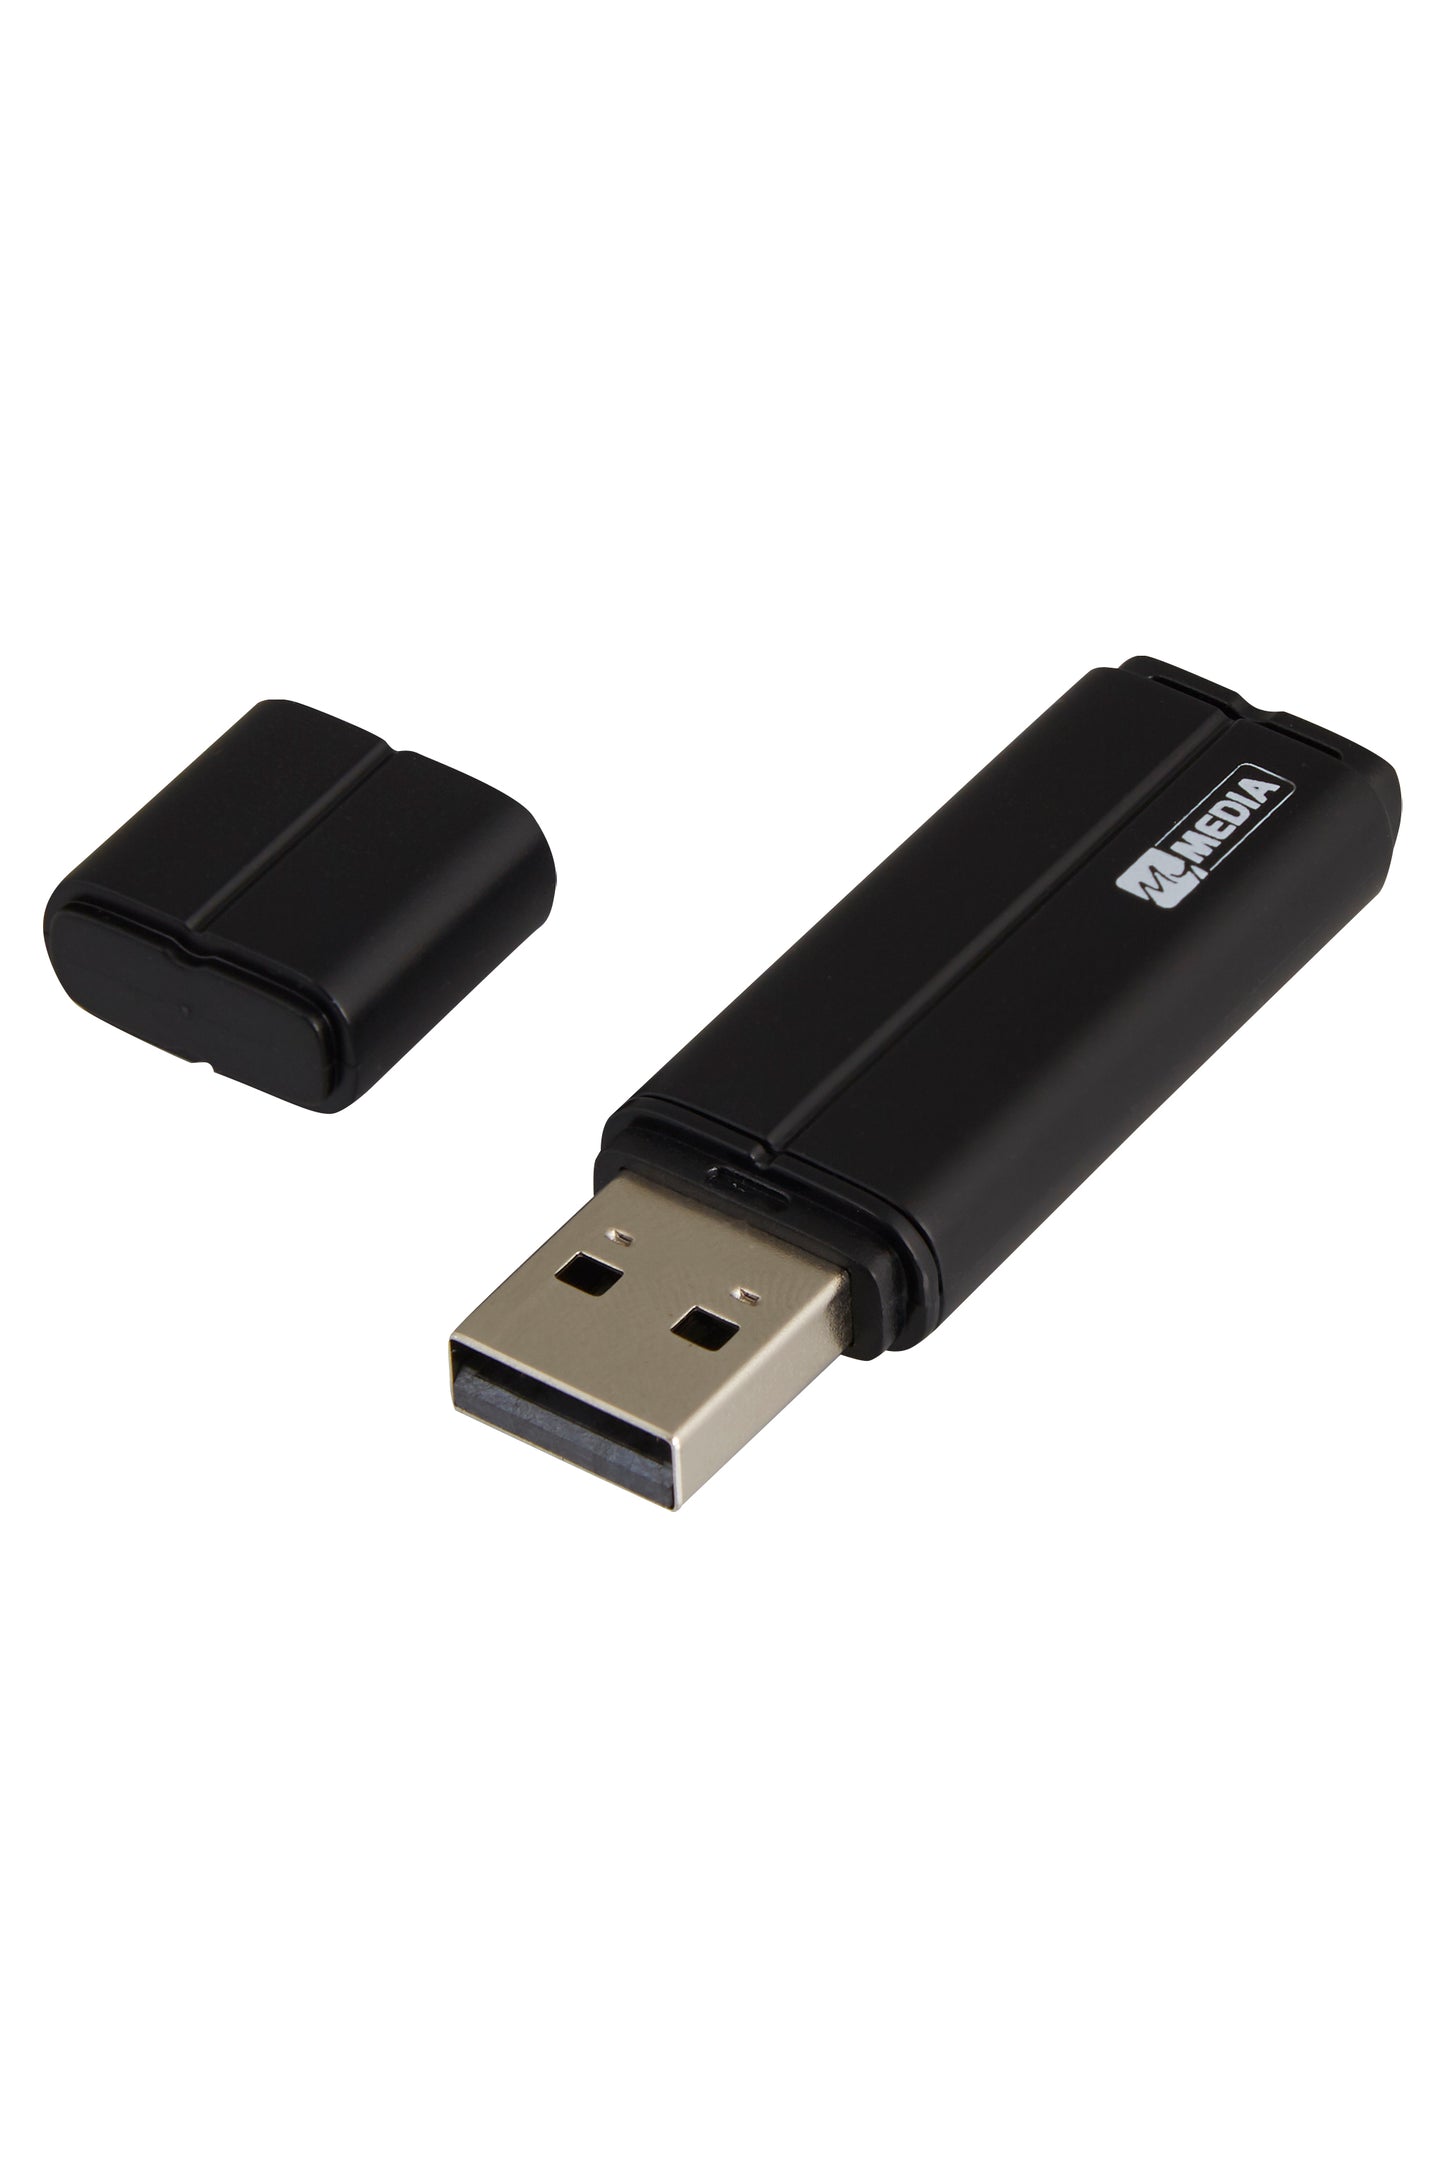 MYMEDIA  USB 8GB  BLACK PINSTRIPE